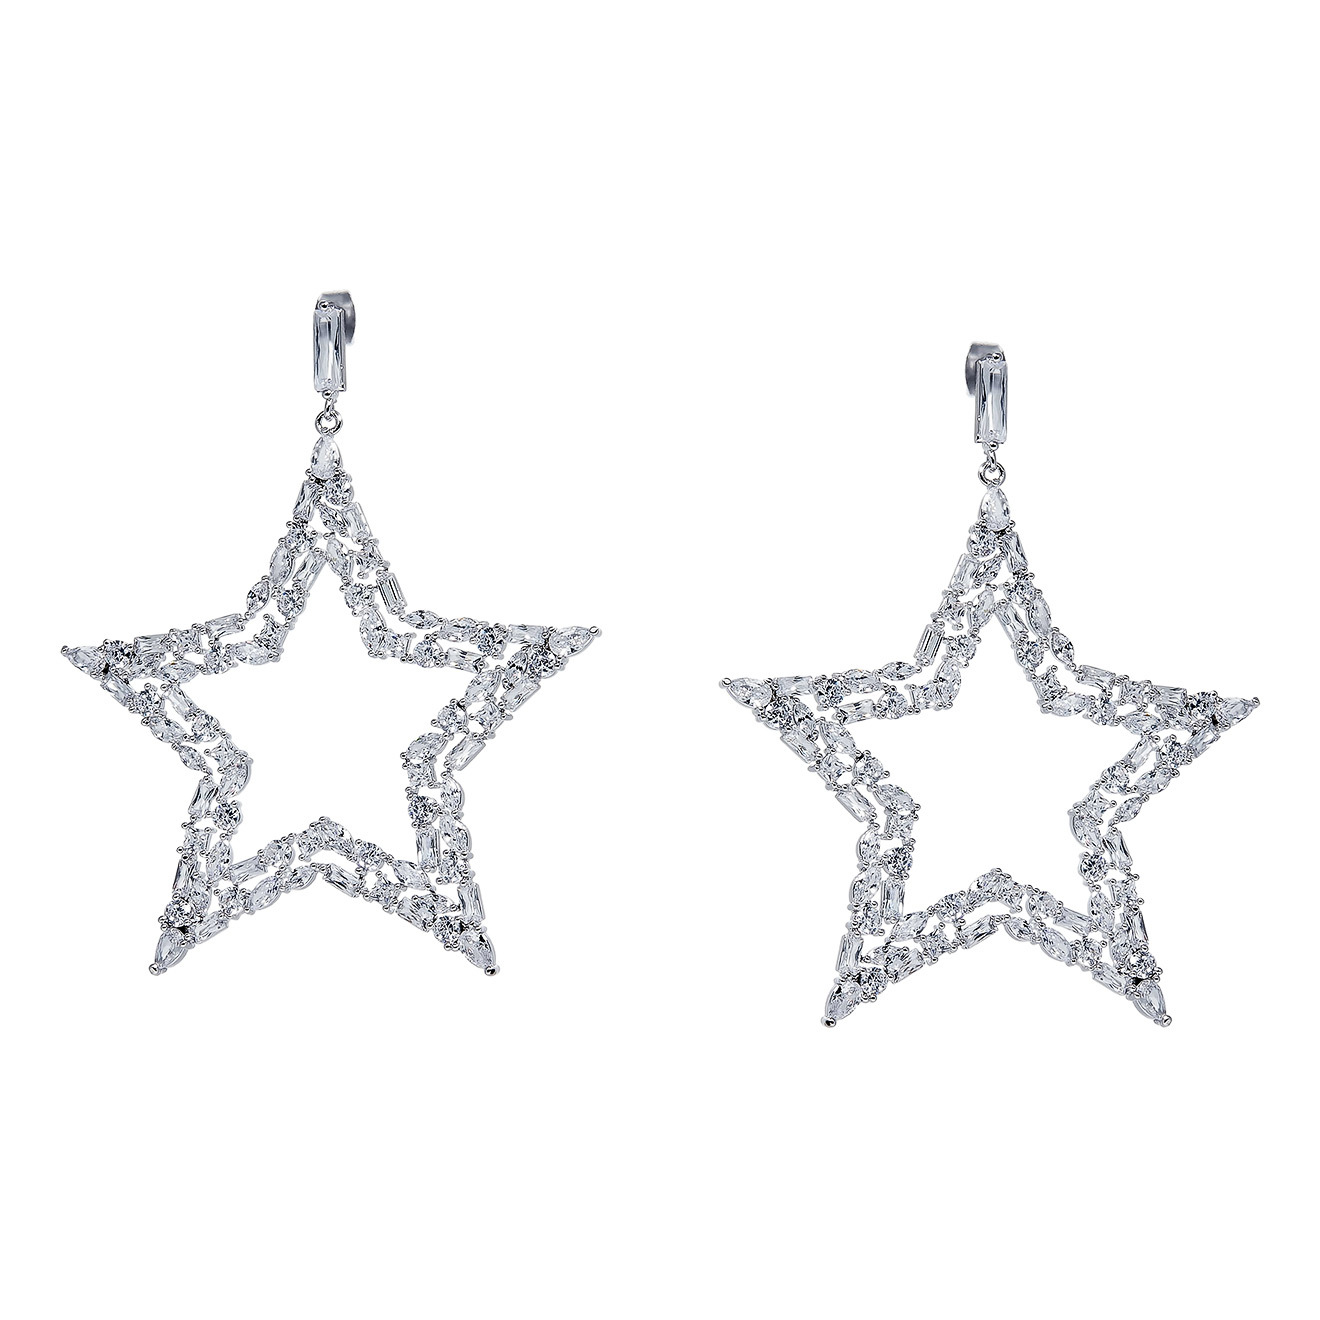 Herald Percy Серебристые серьги-звезды с кристаллами herald percy серебристые серьги звезды с кристаллами и белыми бусинами